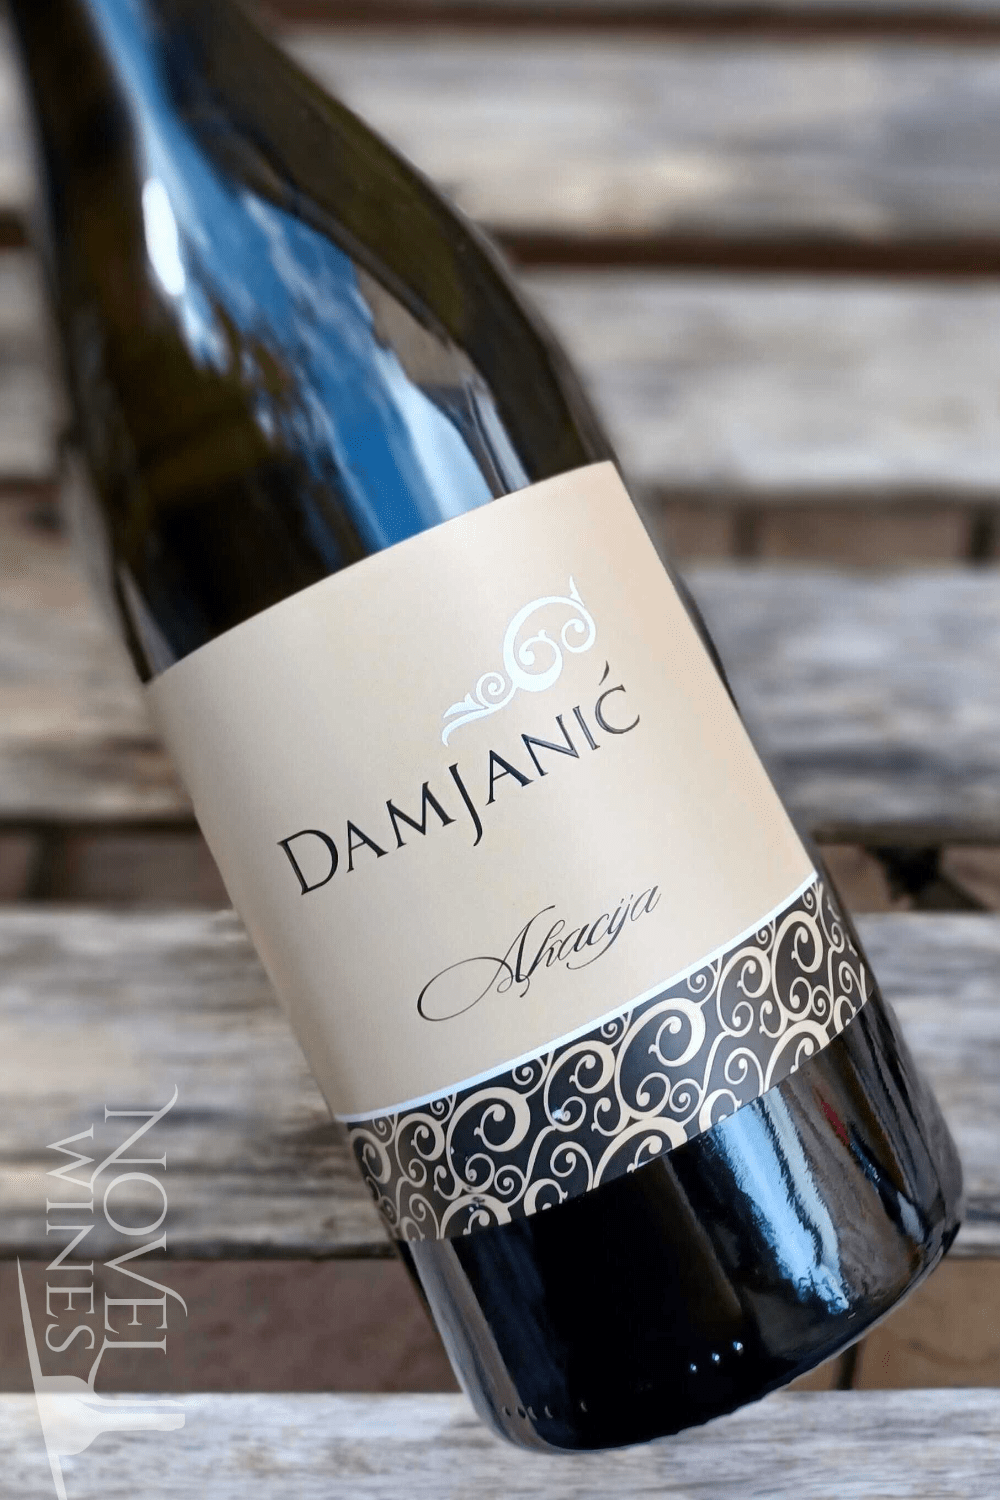 Damjanic White Wine Damjanic Malvazija Akacia 2016, Croatia